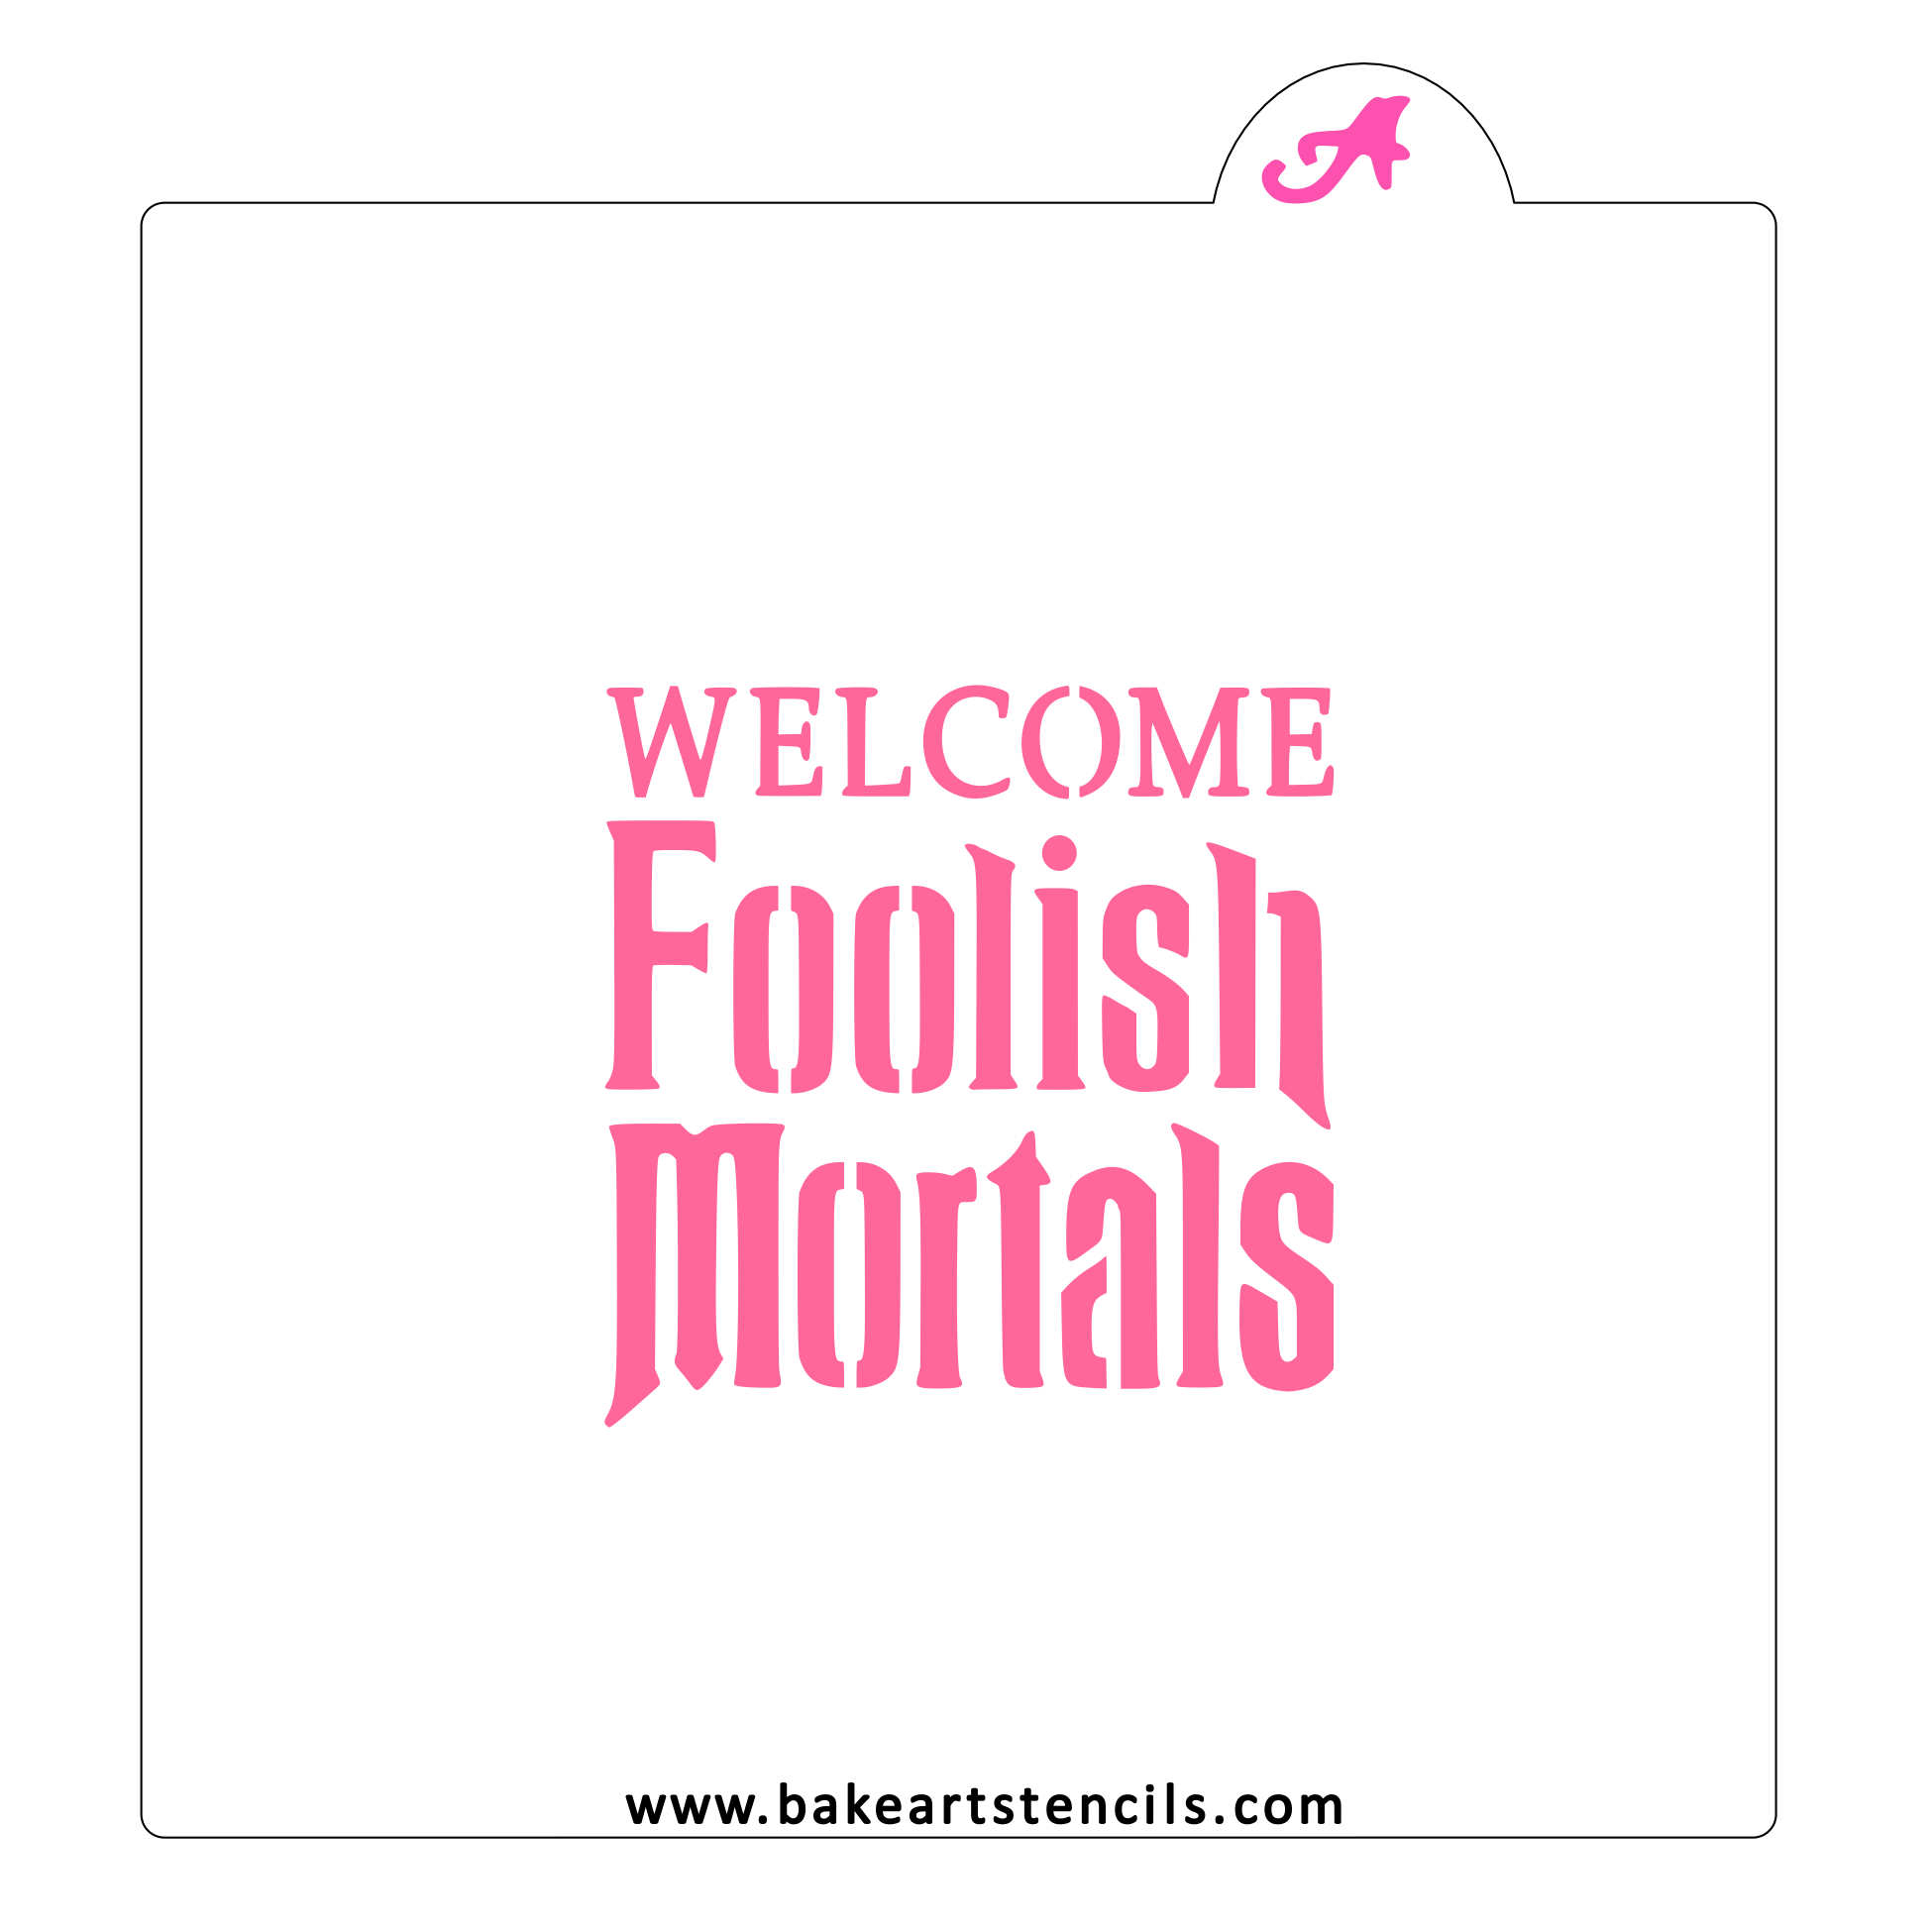 Welcome Foolish Mortals Stencil bakeartstencil